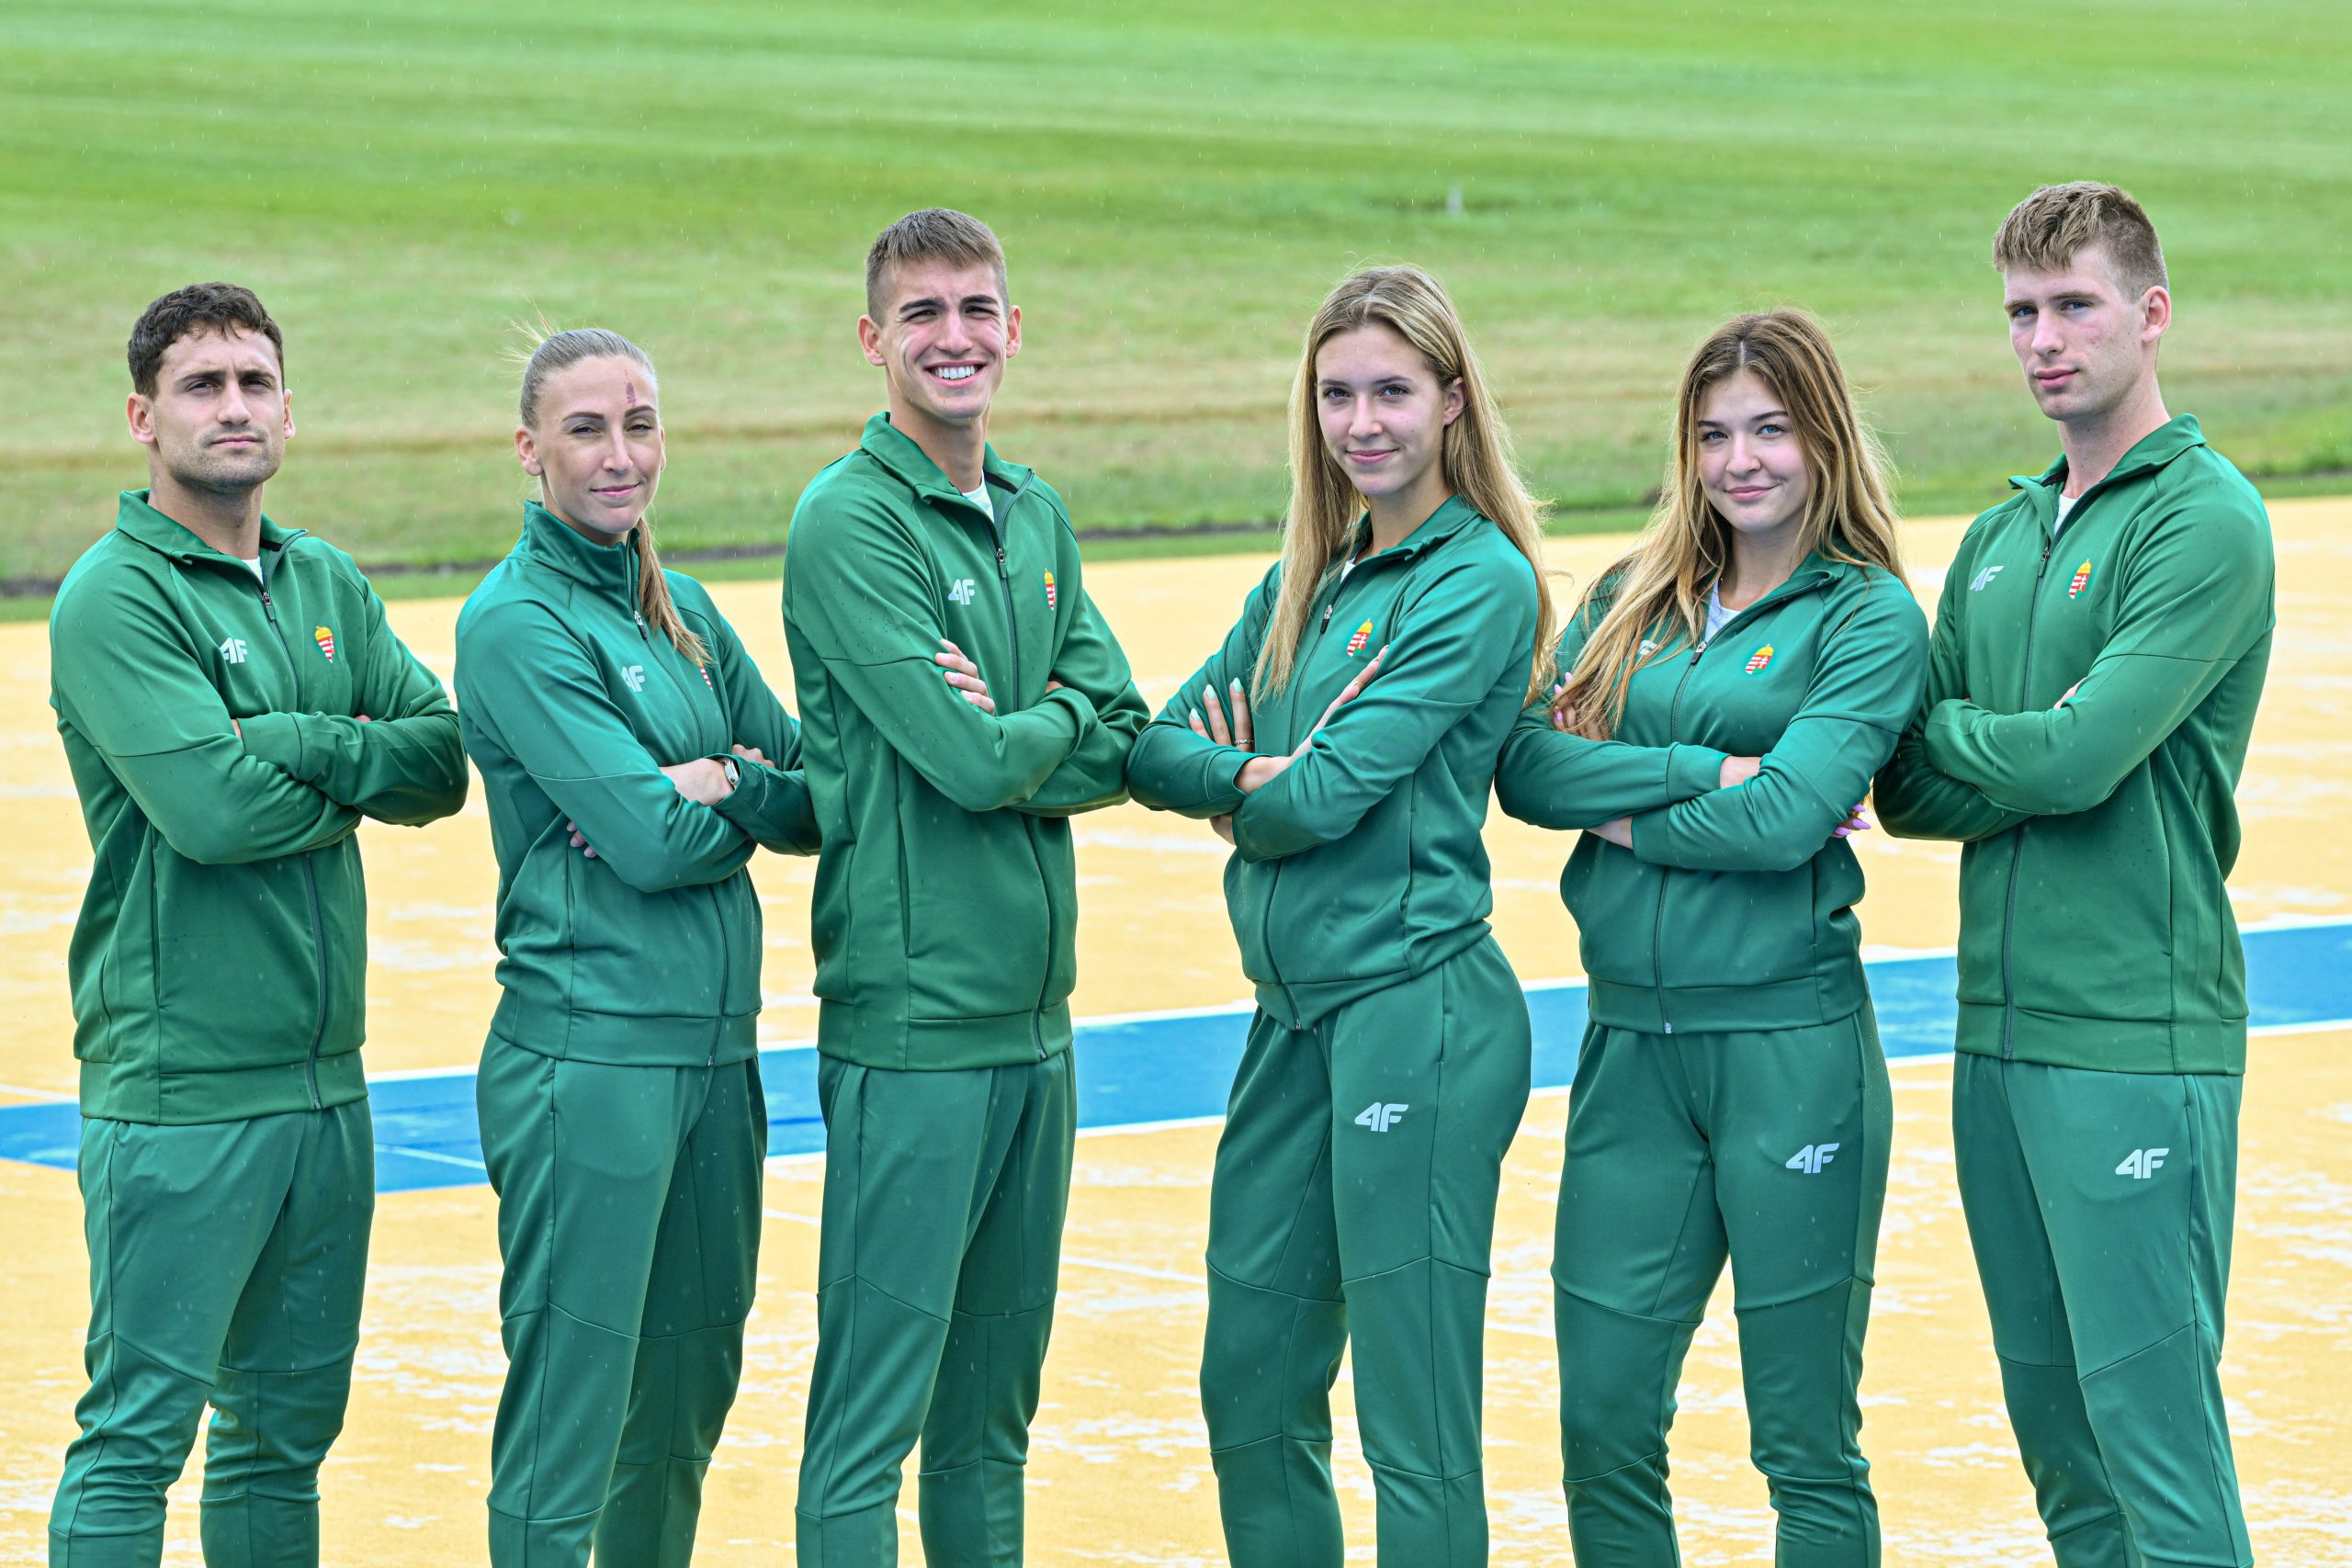 Die Trikots der ungarischen Mannschaft für die Leichtathletik-Weltmeisterschaften in Budapest wurden enthüllt